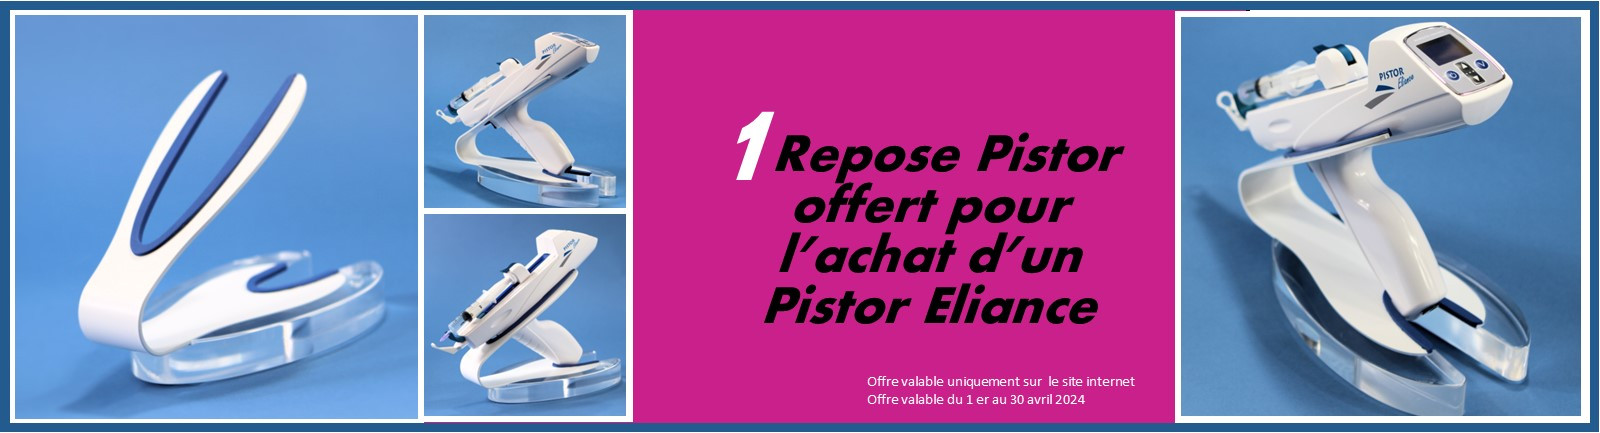 Repose Pistor  offert pour  l’achat d’un Pistor Eliance